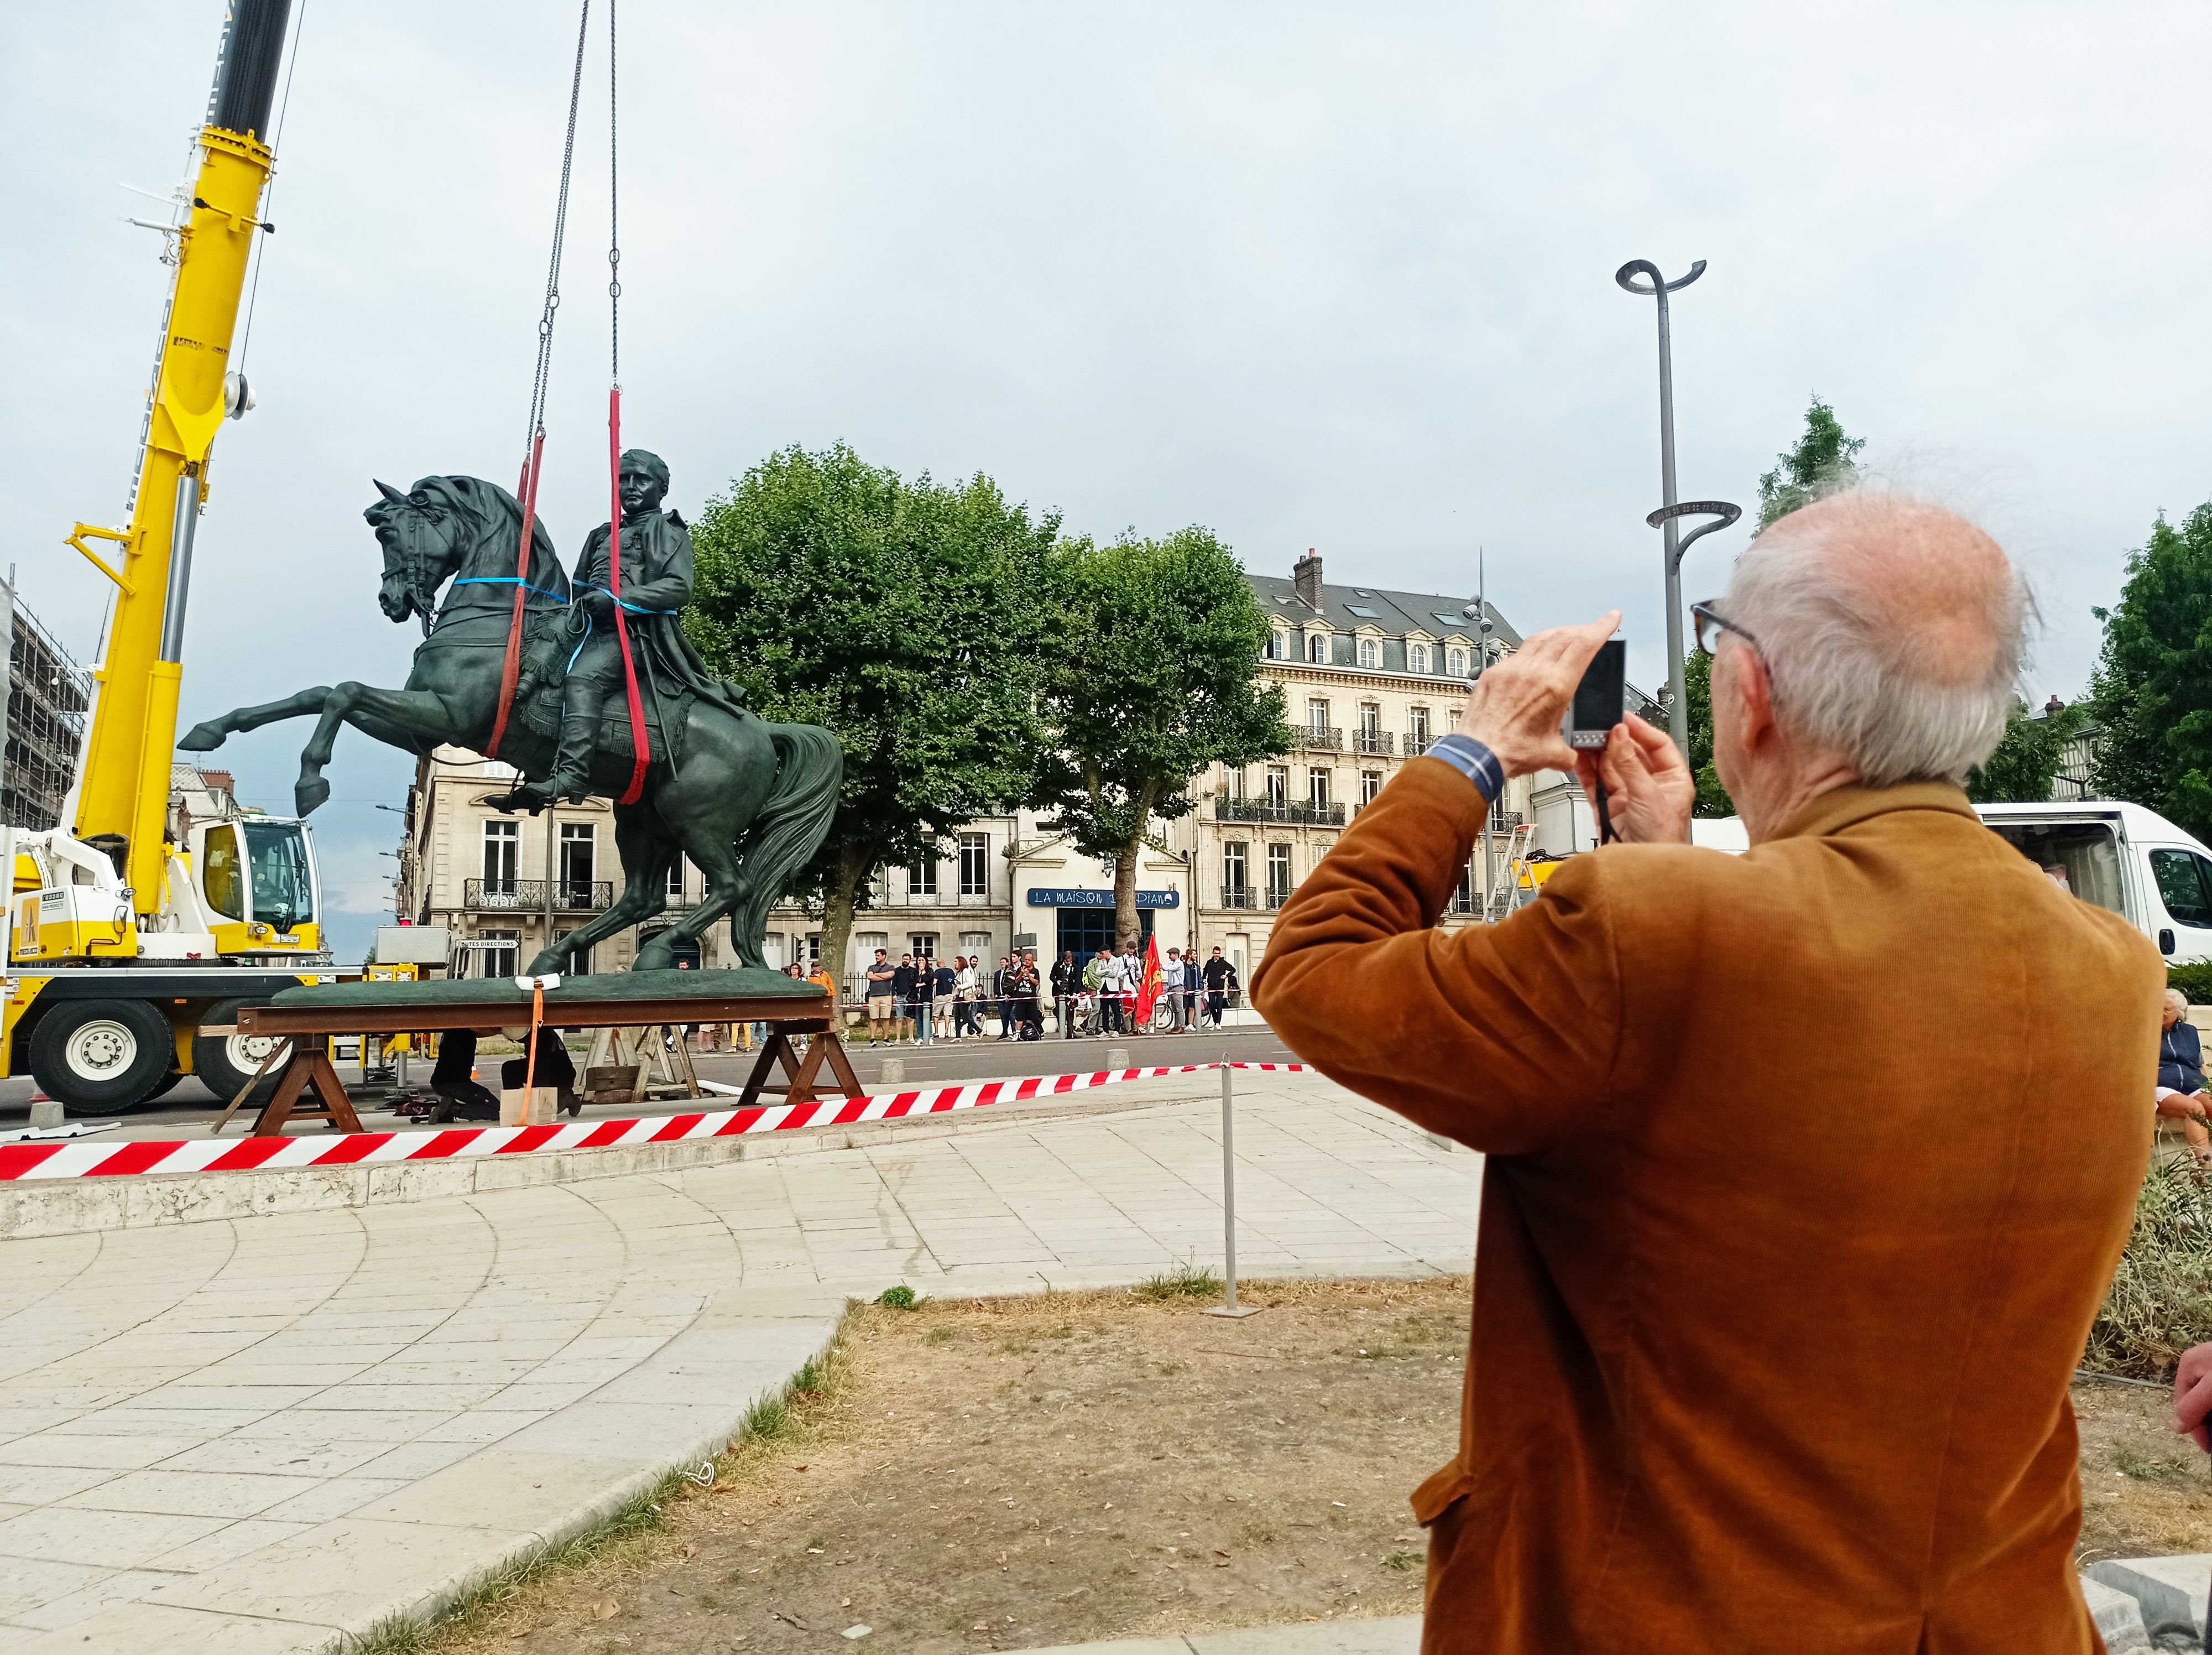 Deux ans après son enlèvement, la statue rouennaise de Napoléon a fait son grand retour place de l'Hôtel de ville de Rouen, jeudi 28 juillet 2022, sous les applaudissements. Gisèle Halimi aura bien sa statue mais ailleurs. Lou Garçon